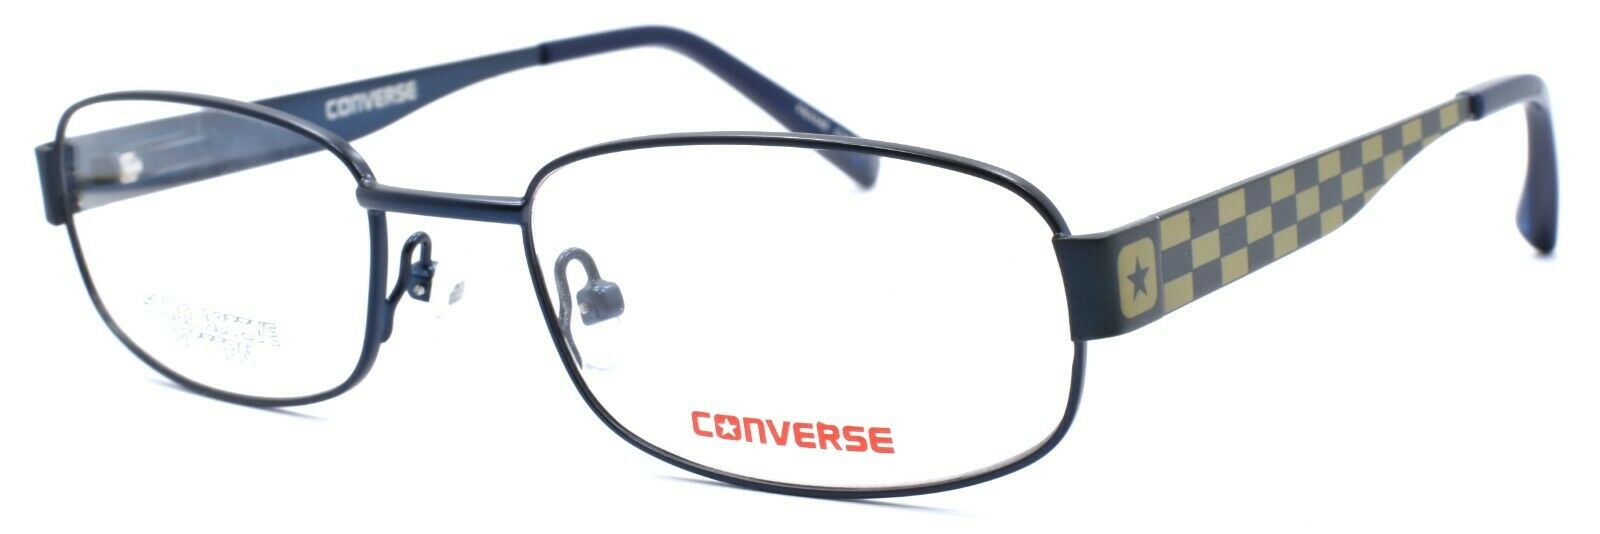 1-CONVERSE K005 Kids Boys Eyeglasses Frames 49-17-135 Navy + CASE-751286247336-IKSpecs